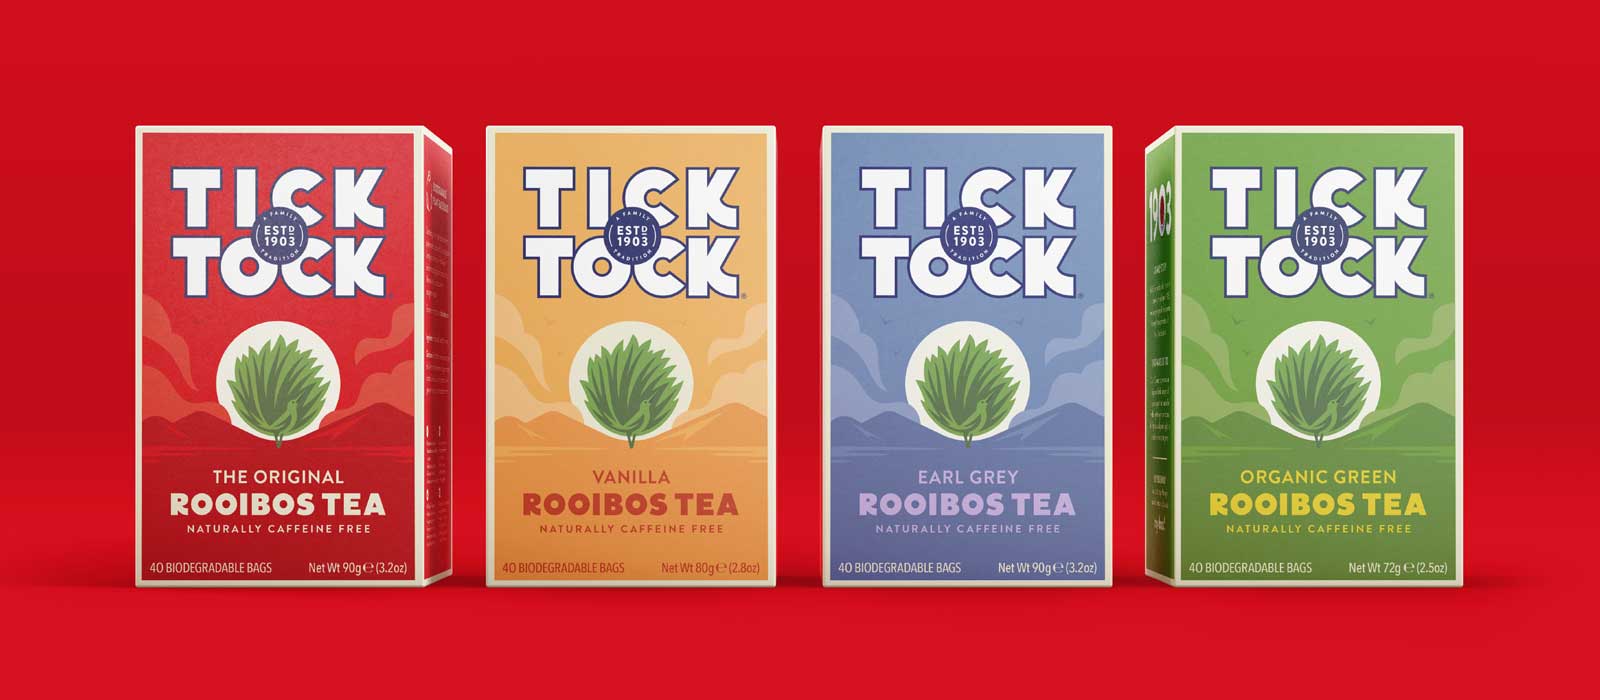 Tick Tock tea range - banner